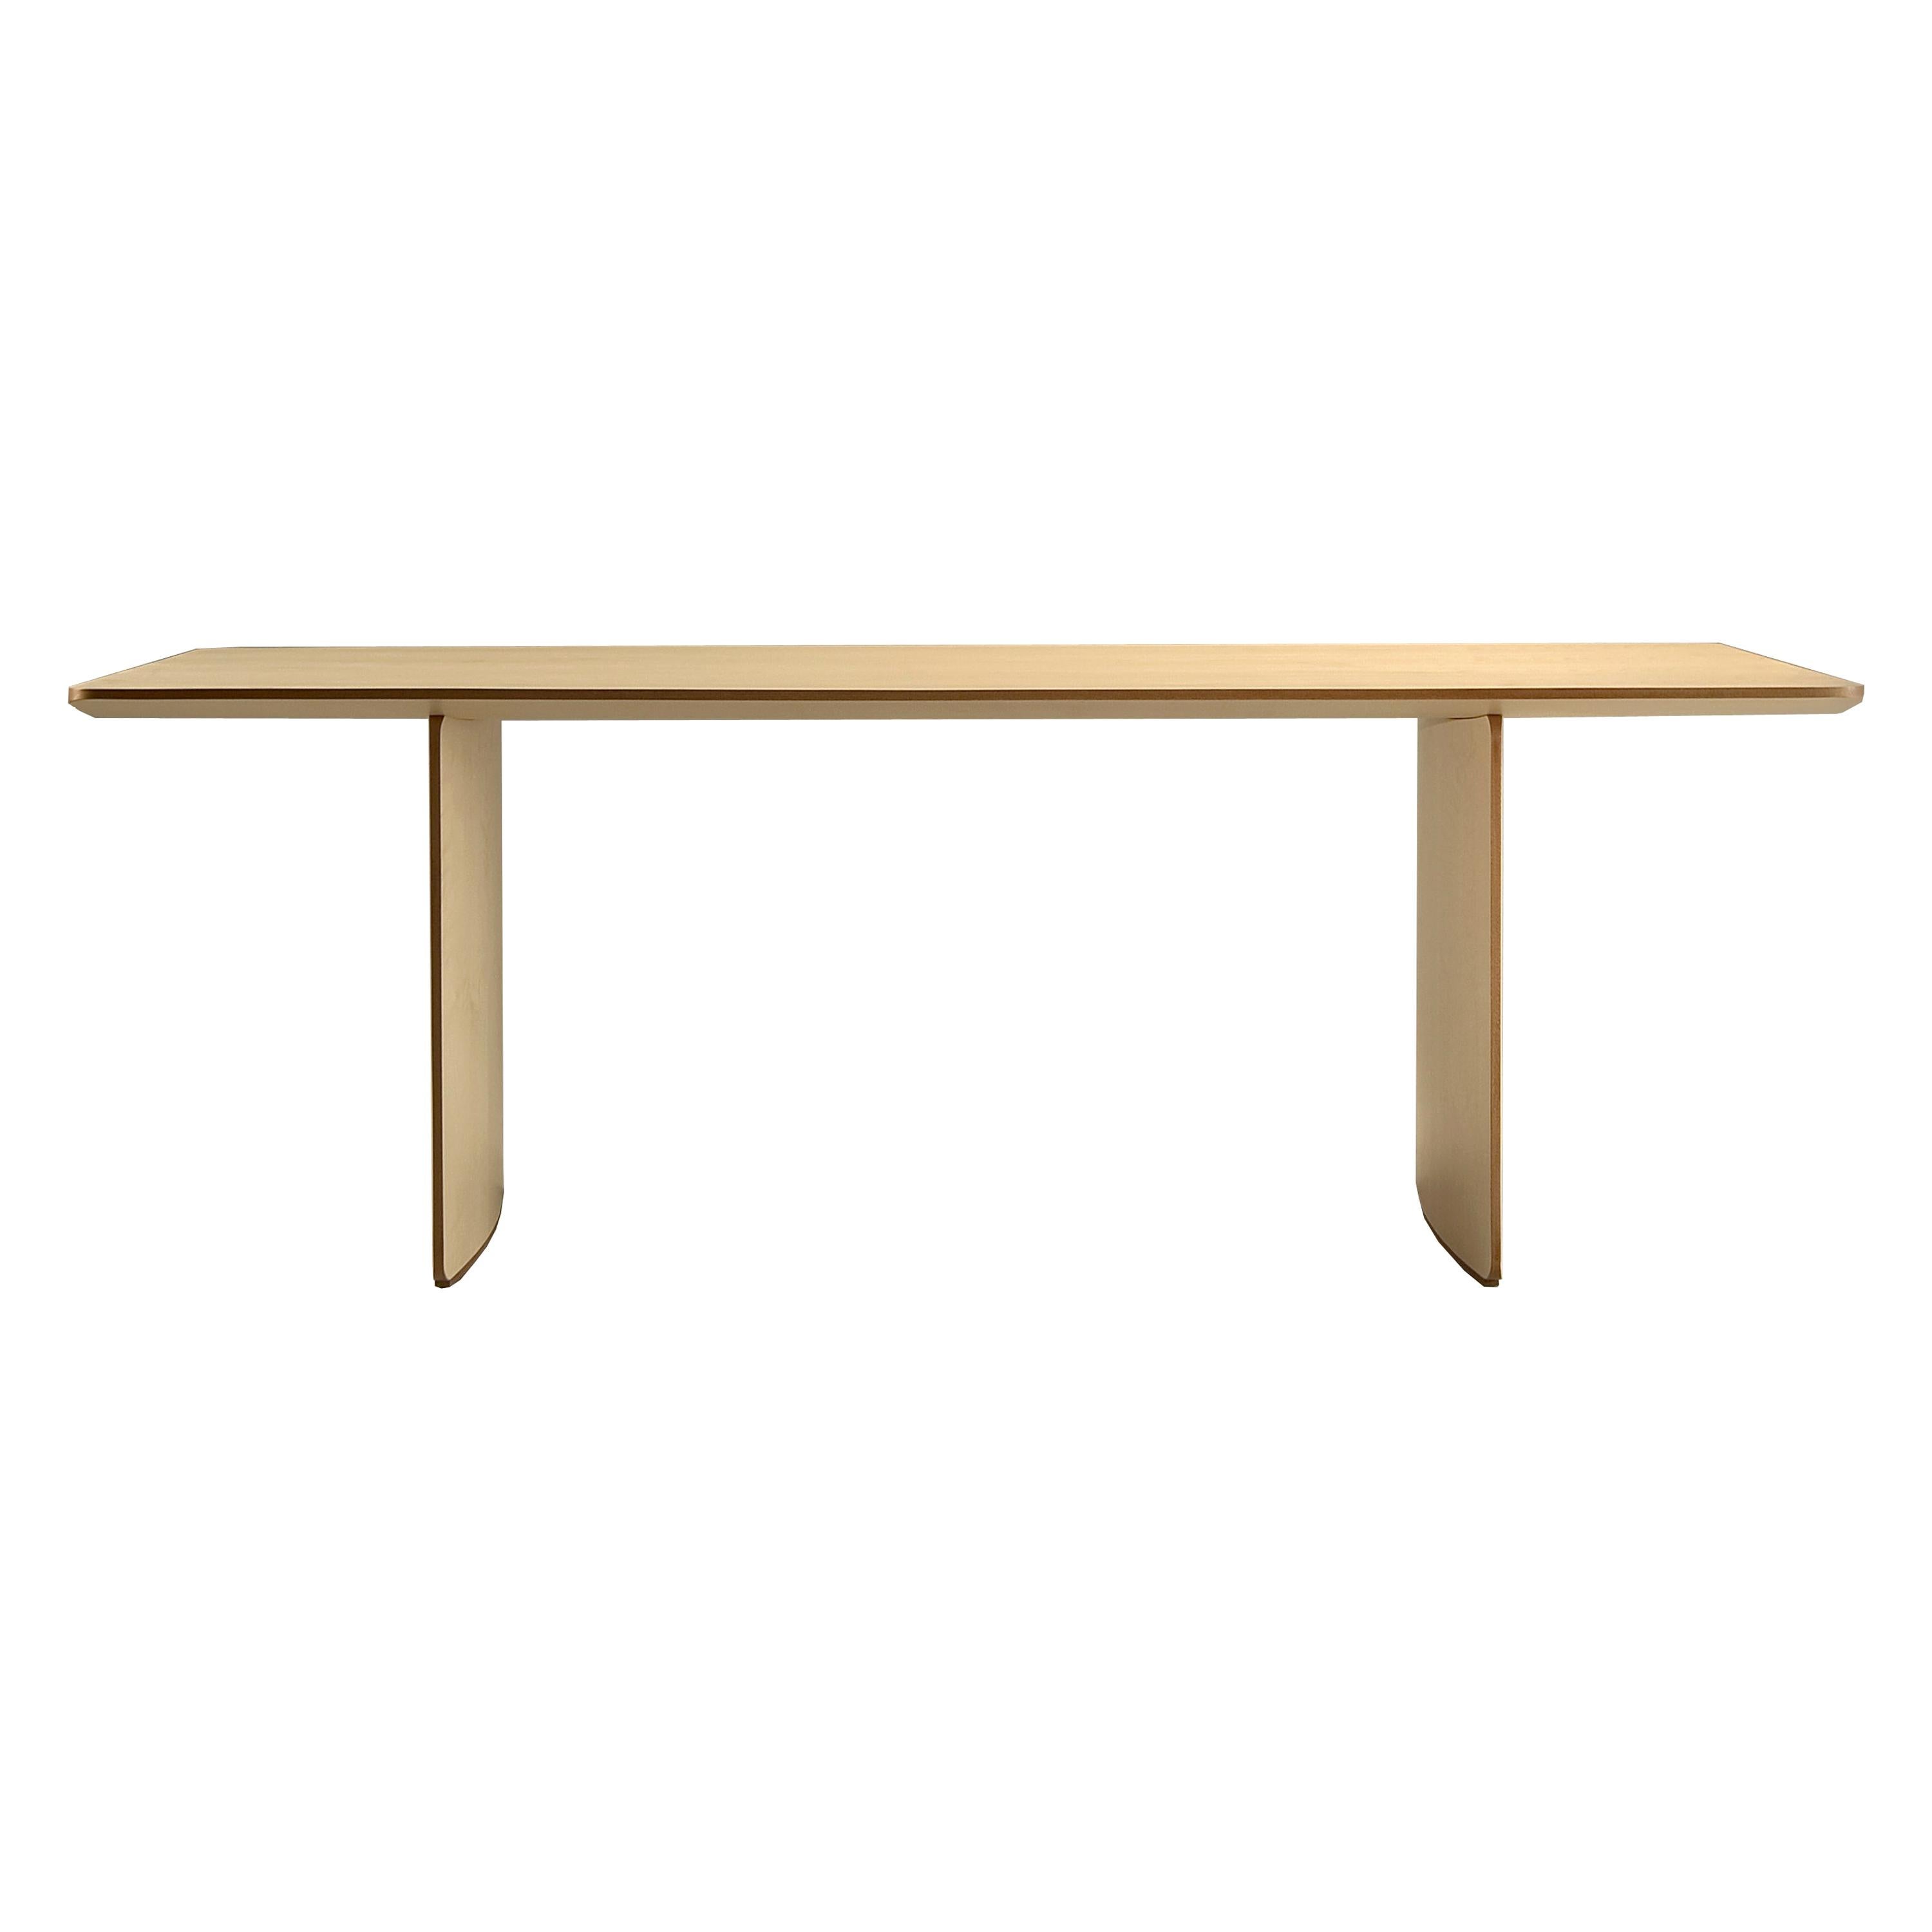 Aero, Contemporary Table or Desk in Maple Wood, Design Franco Poli